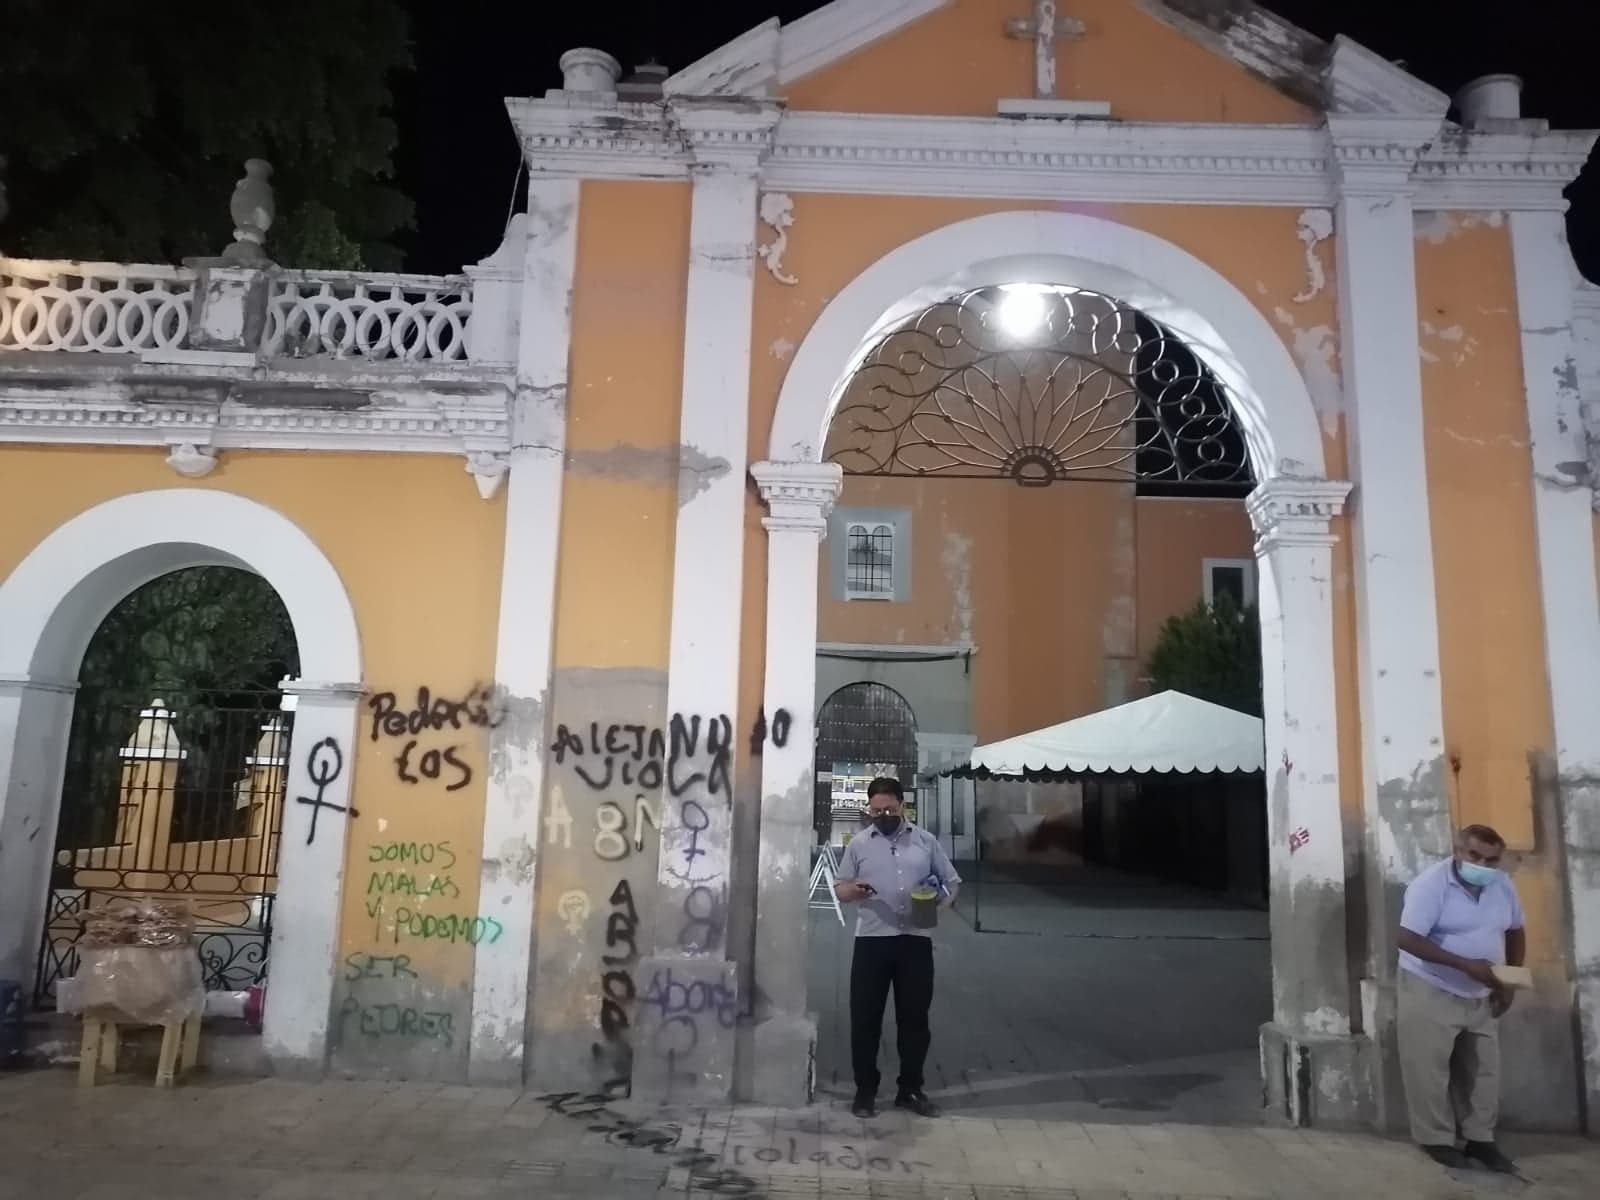 Tras daños a iglesia en marcha feminista, Obispo de Tehuacán pide respeto